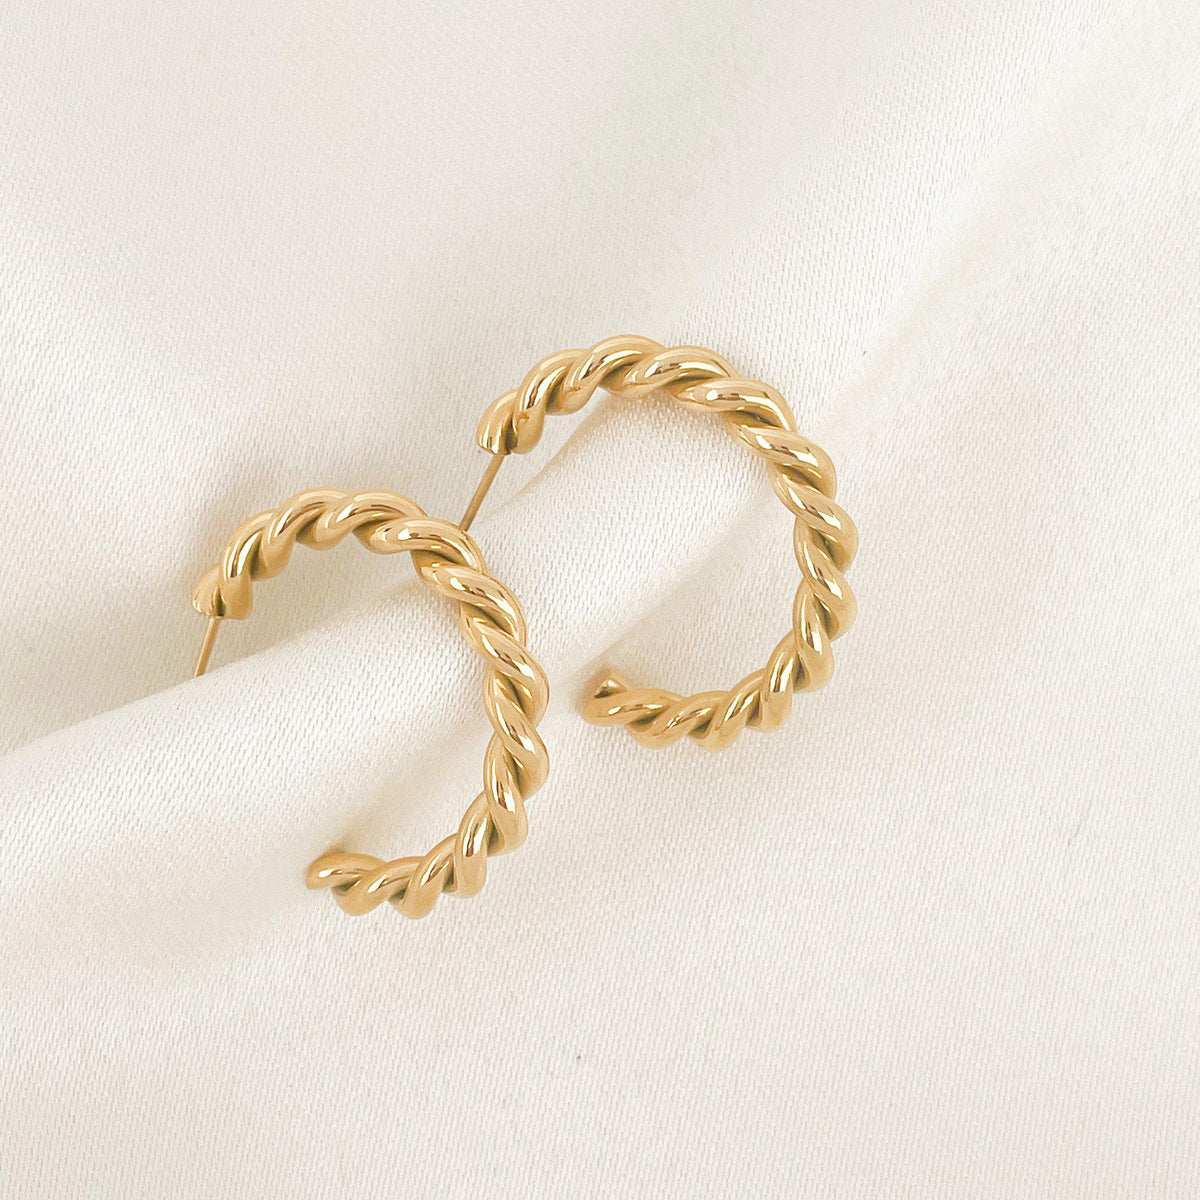 Twist Multi-hoops Earring, Gold & Crystal Brass & Glass, Women